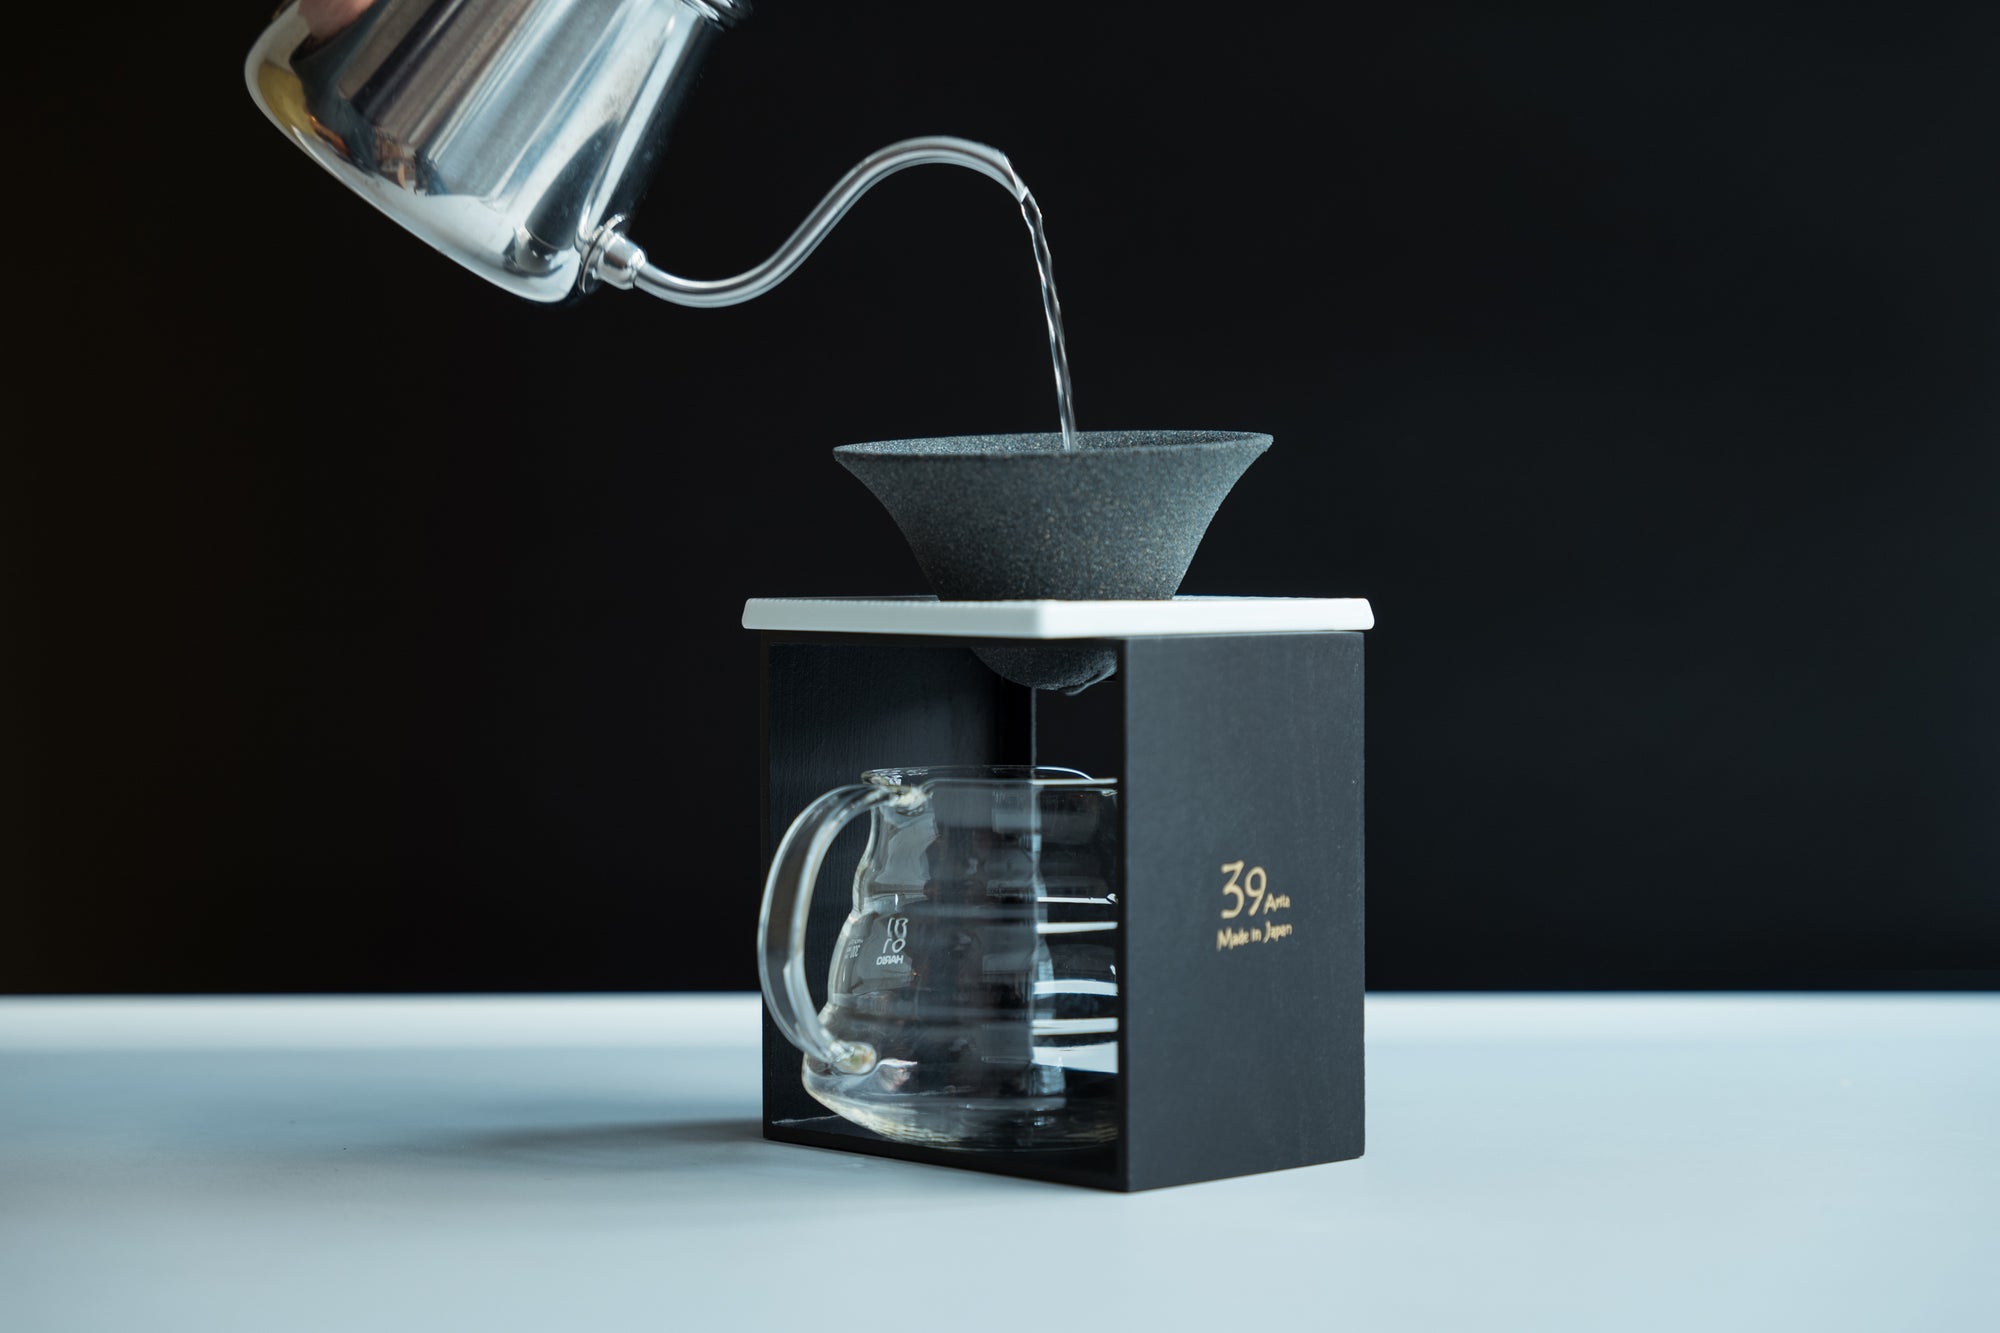 New! 39 Arita Ceramic Coffee Filter Premium Set⁠